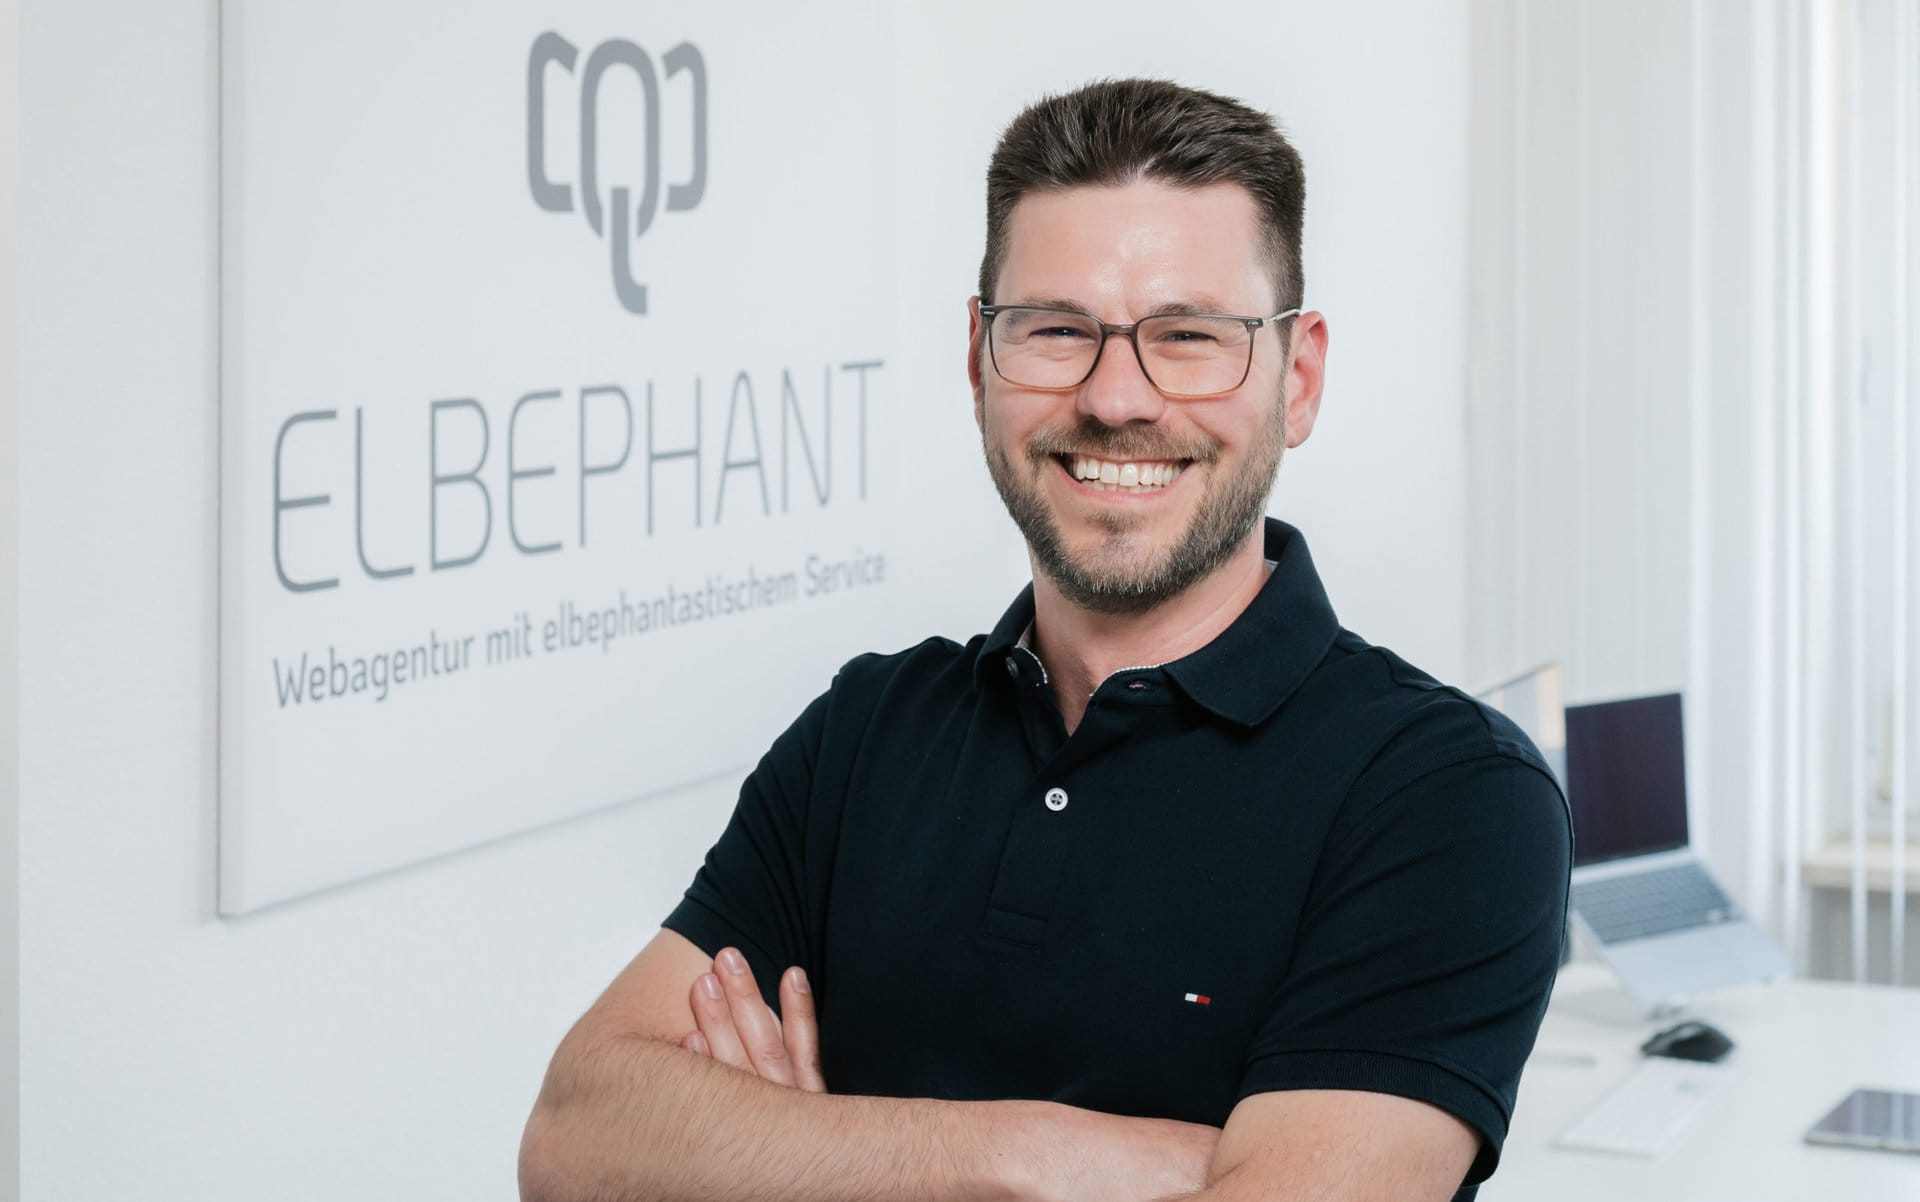 elbephant webdesign agentur norddeutschland hamburg trittau peer scaled